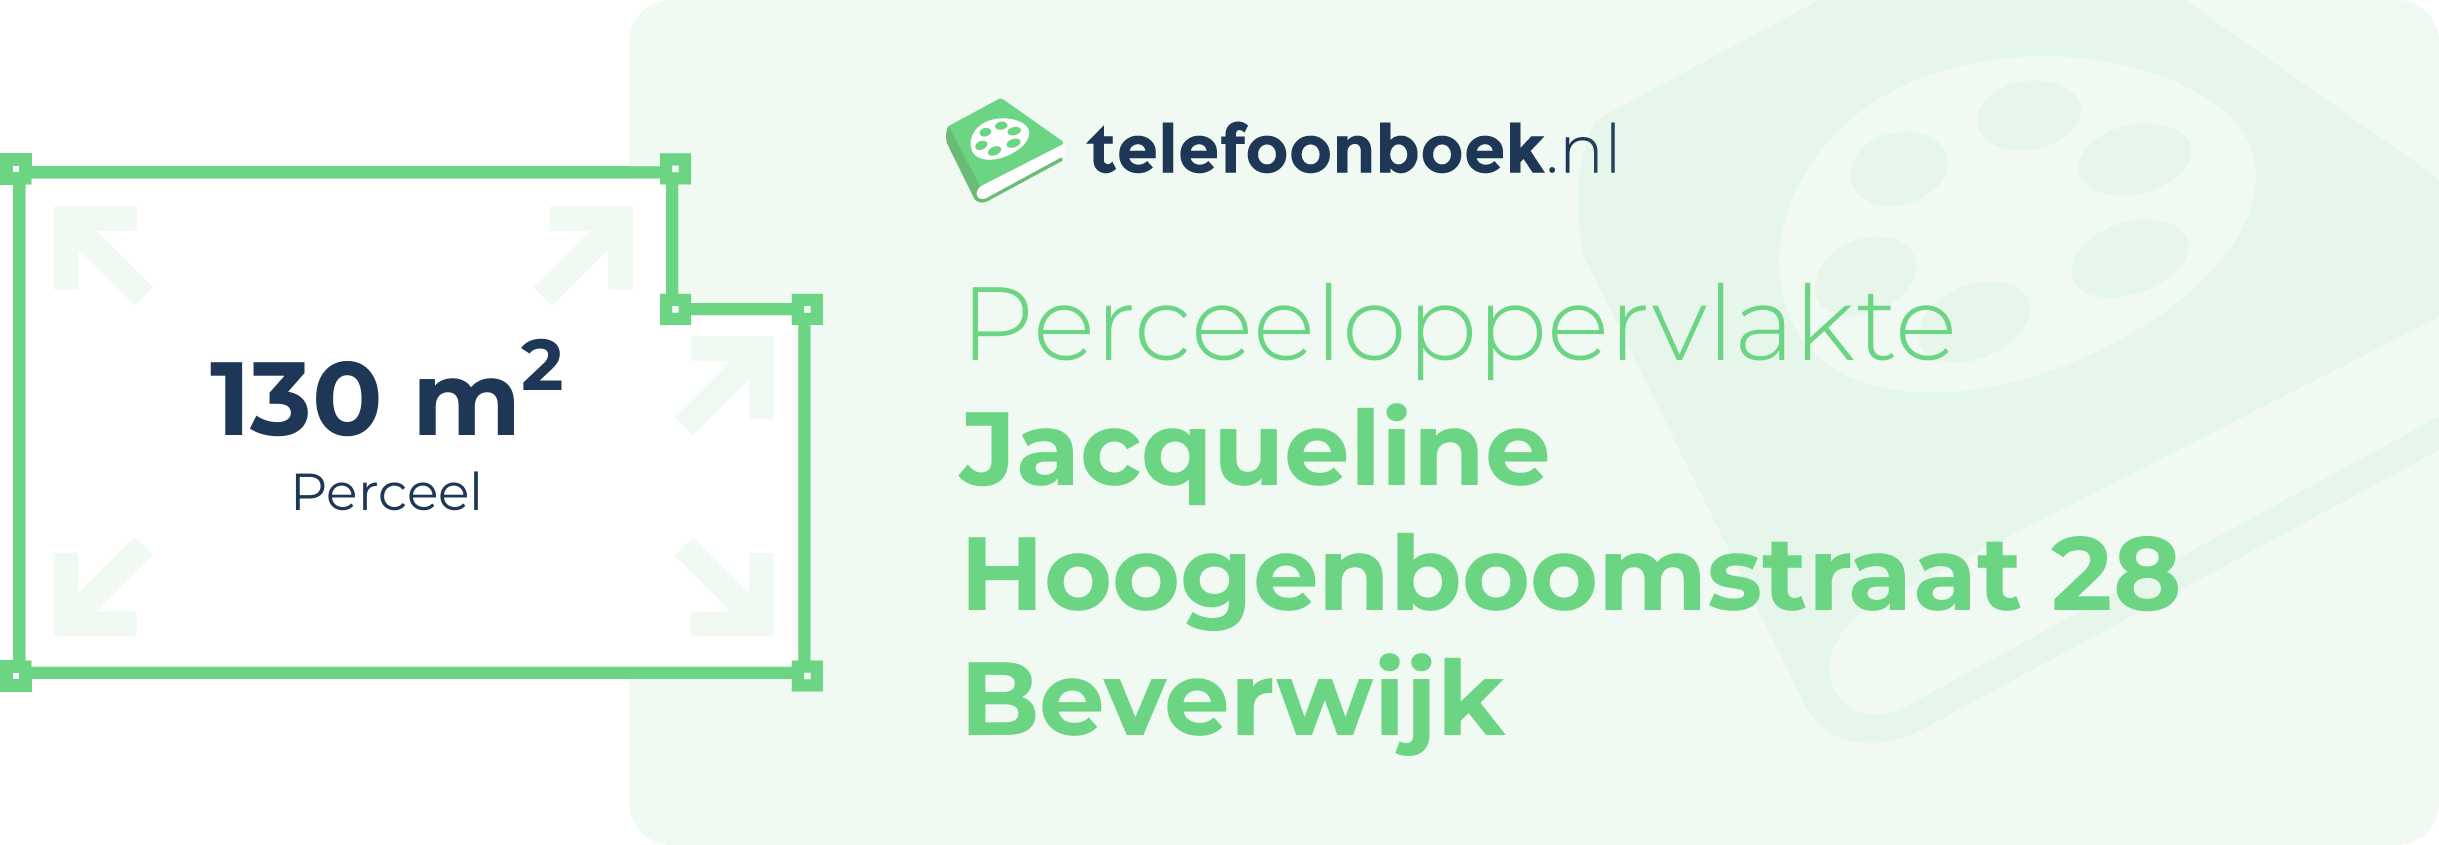 Perceeloppervlakte Jacqueline Hoogenboomstraat 28 Beverwijk